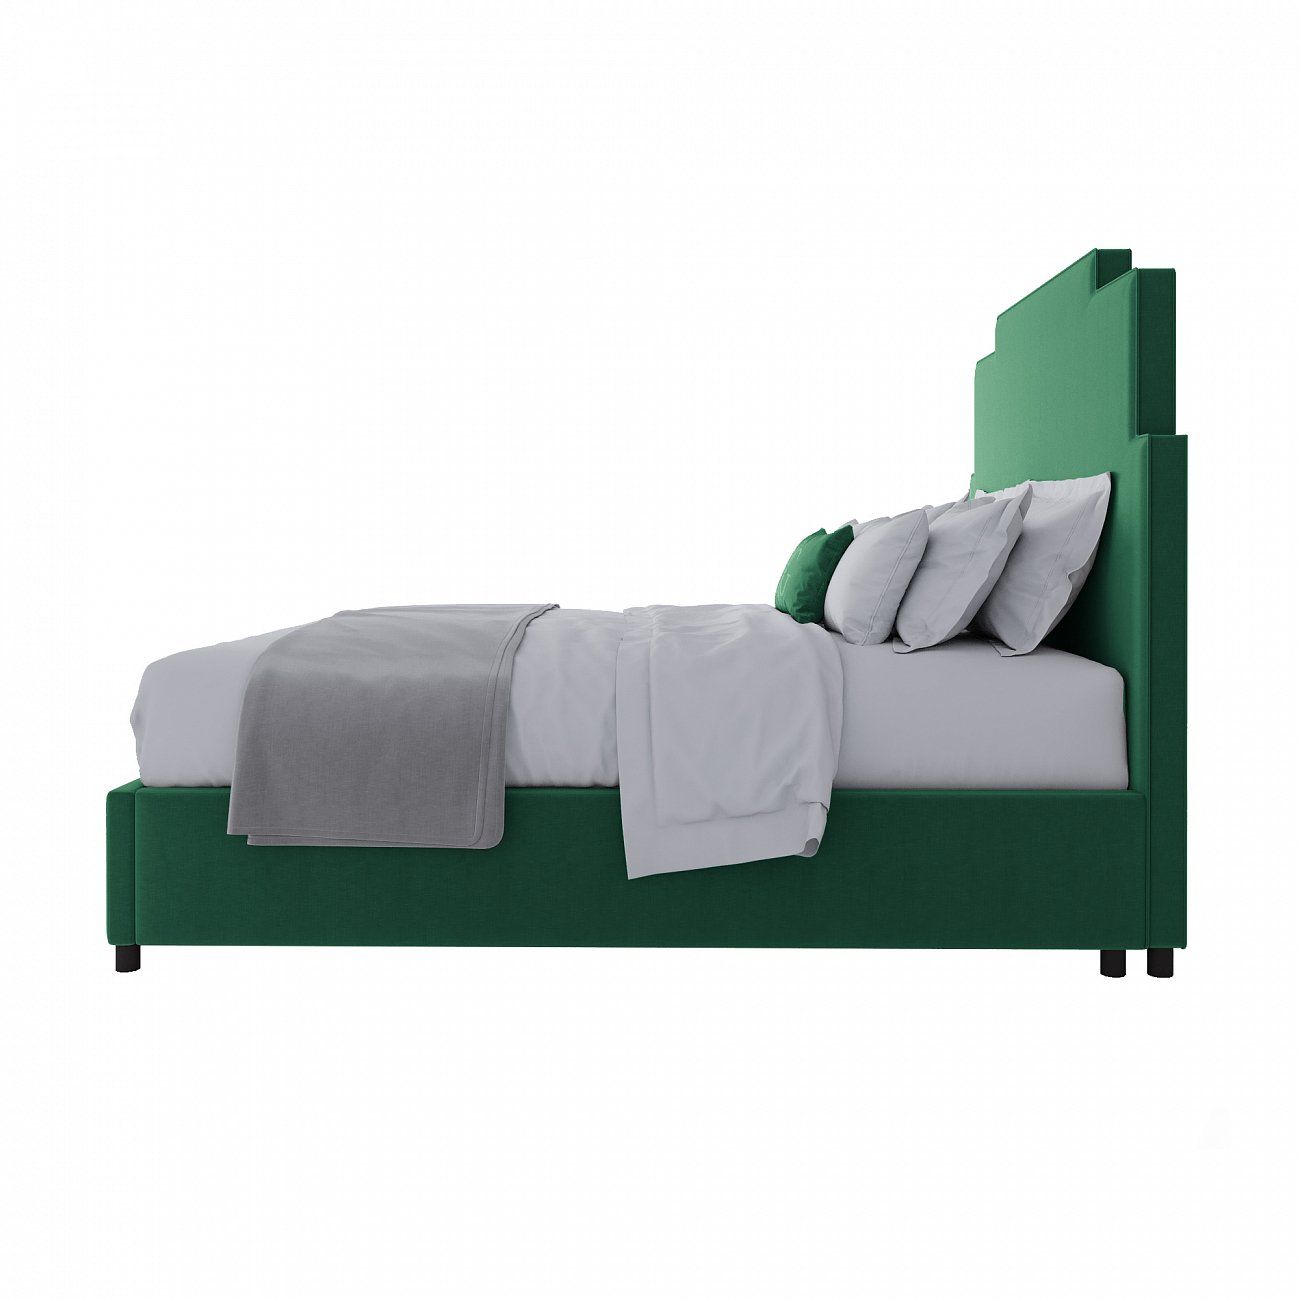 Кровать двуспальная 160х200 см зеленая Paxton Emerald Velvet